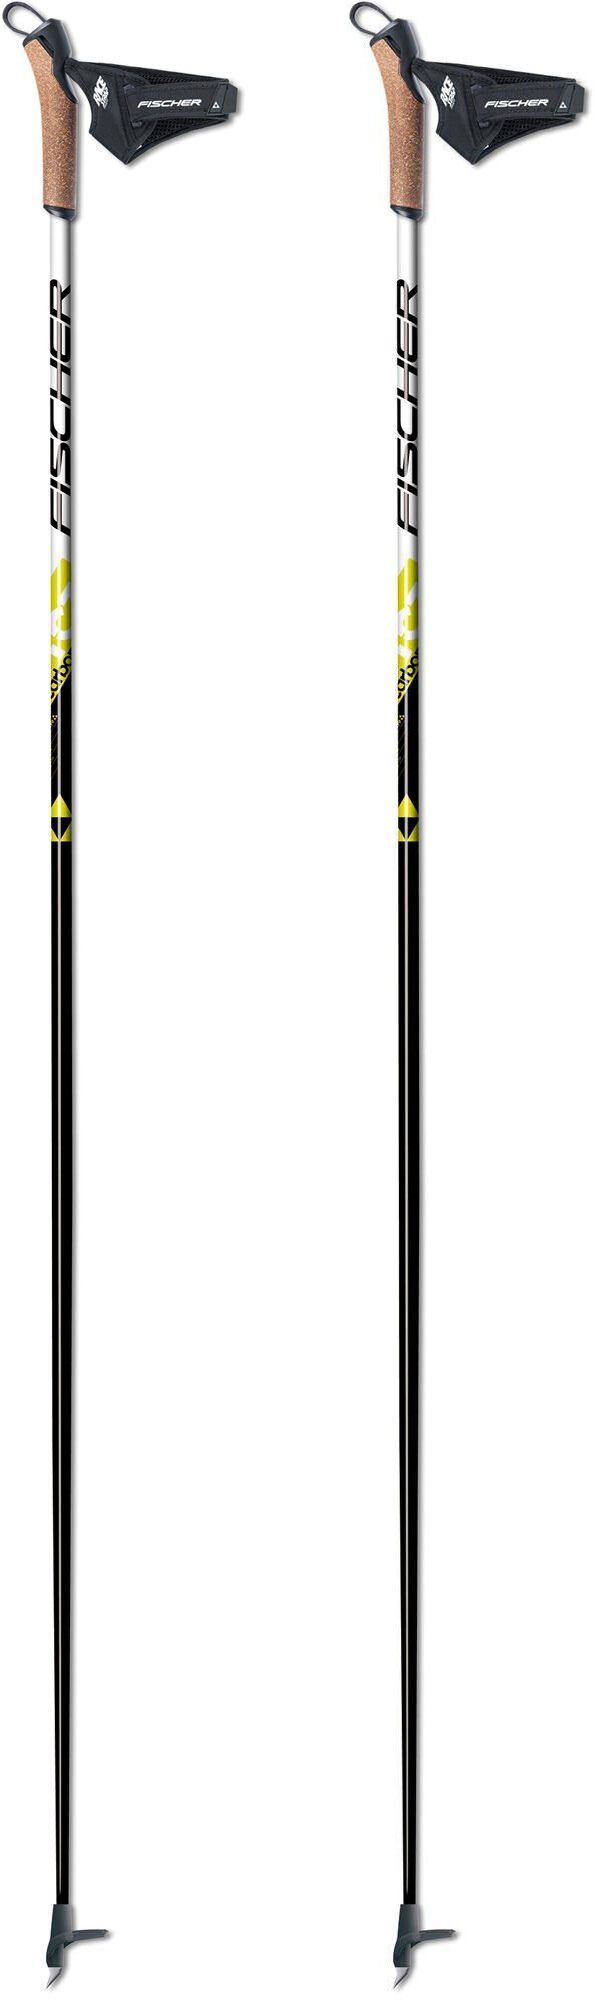 Fischer RC3 Carbon Poles 160 cm